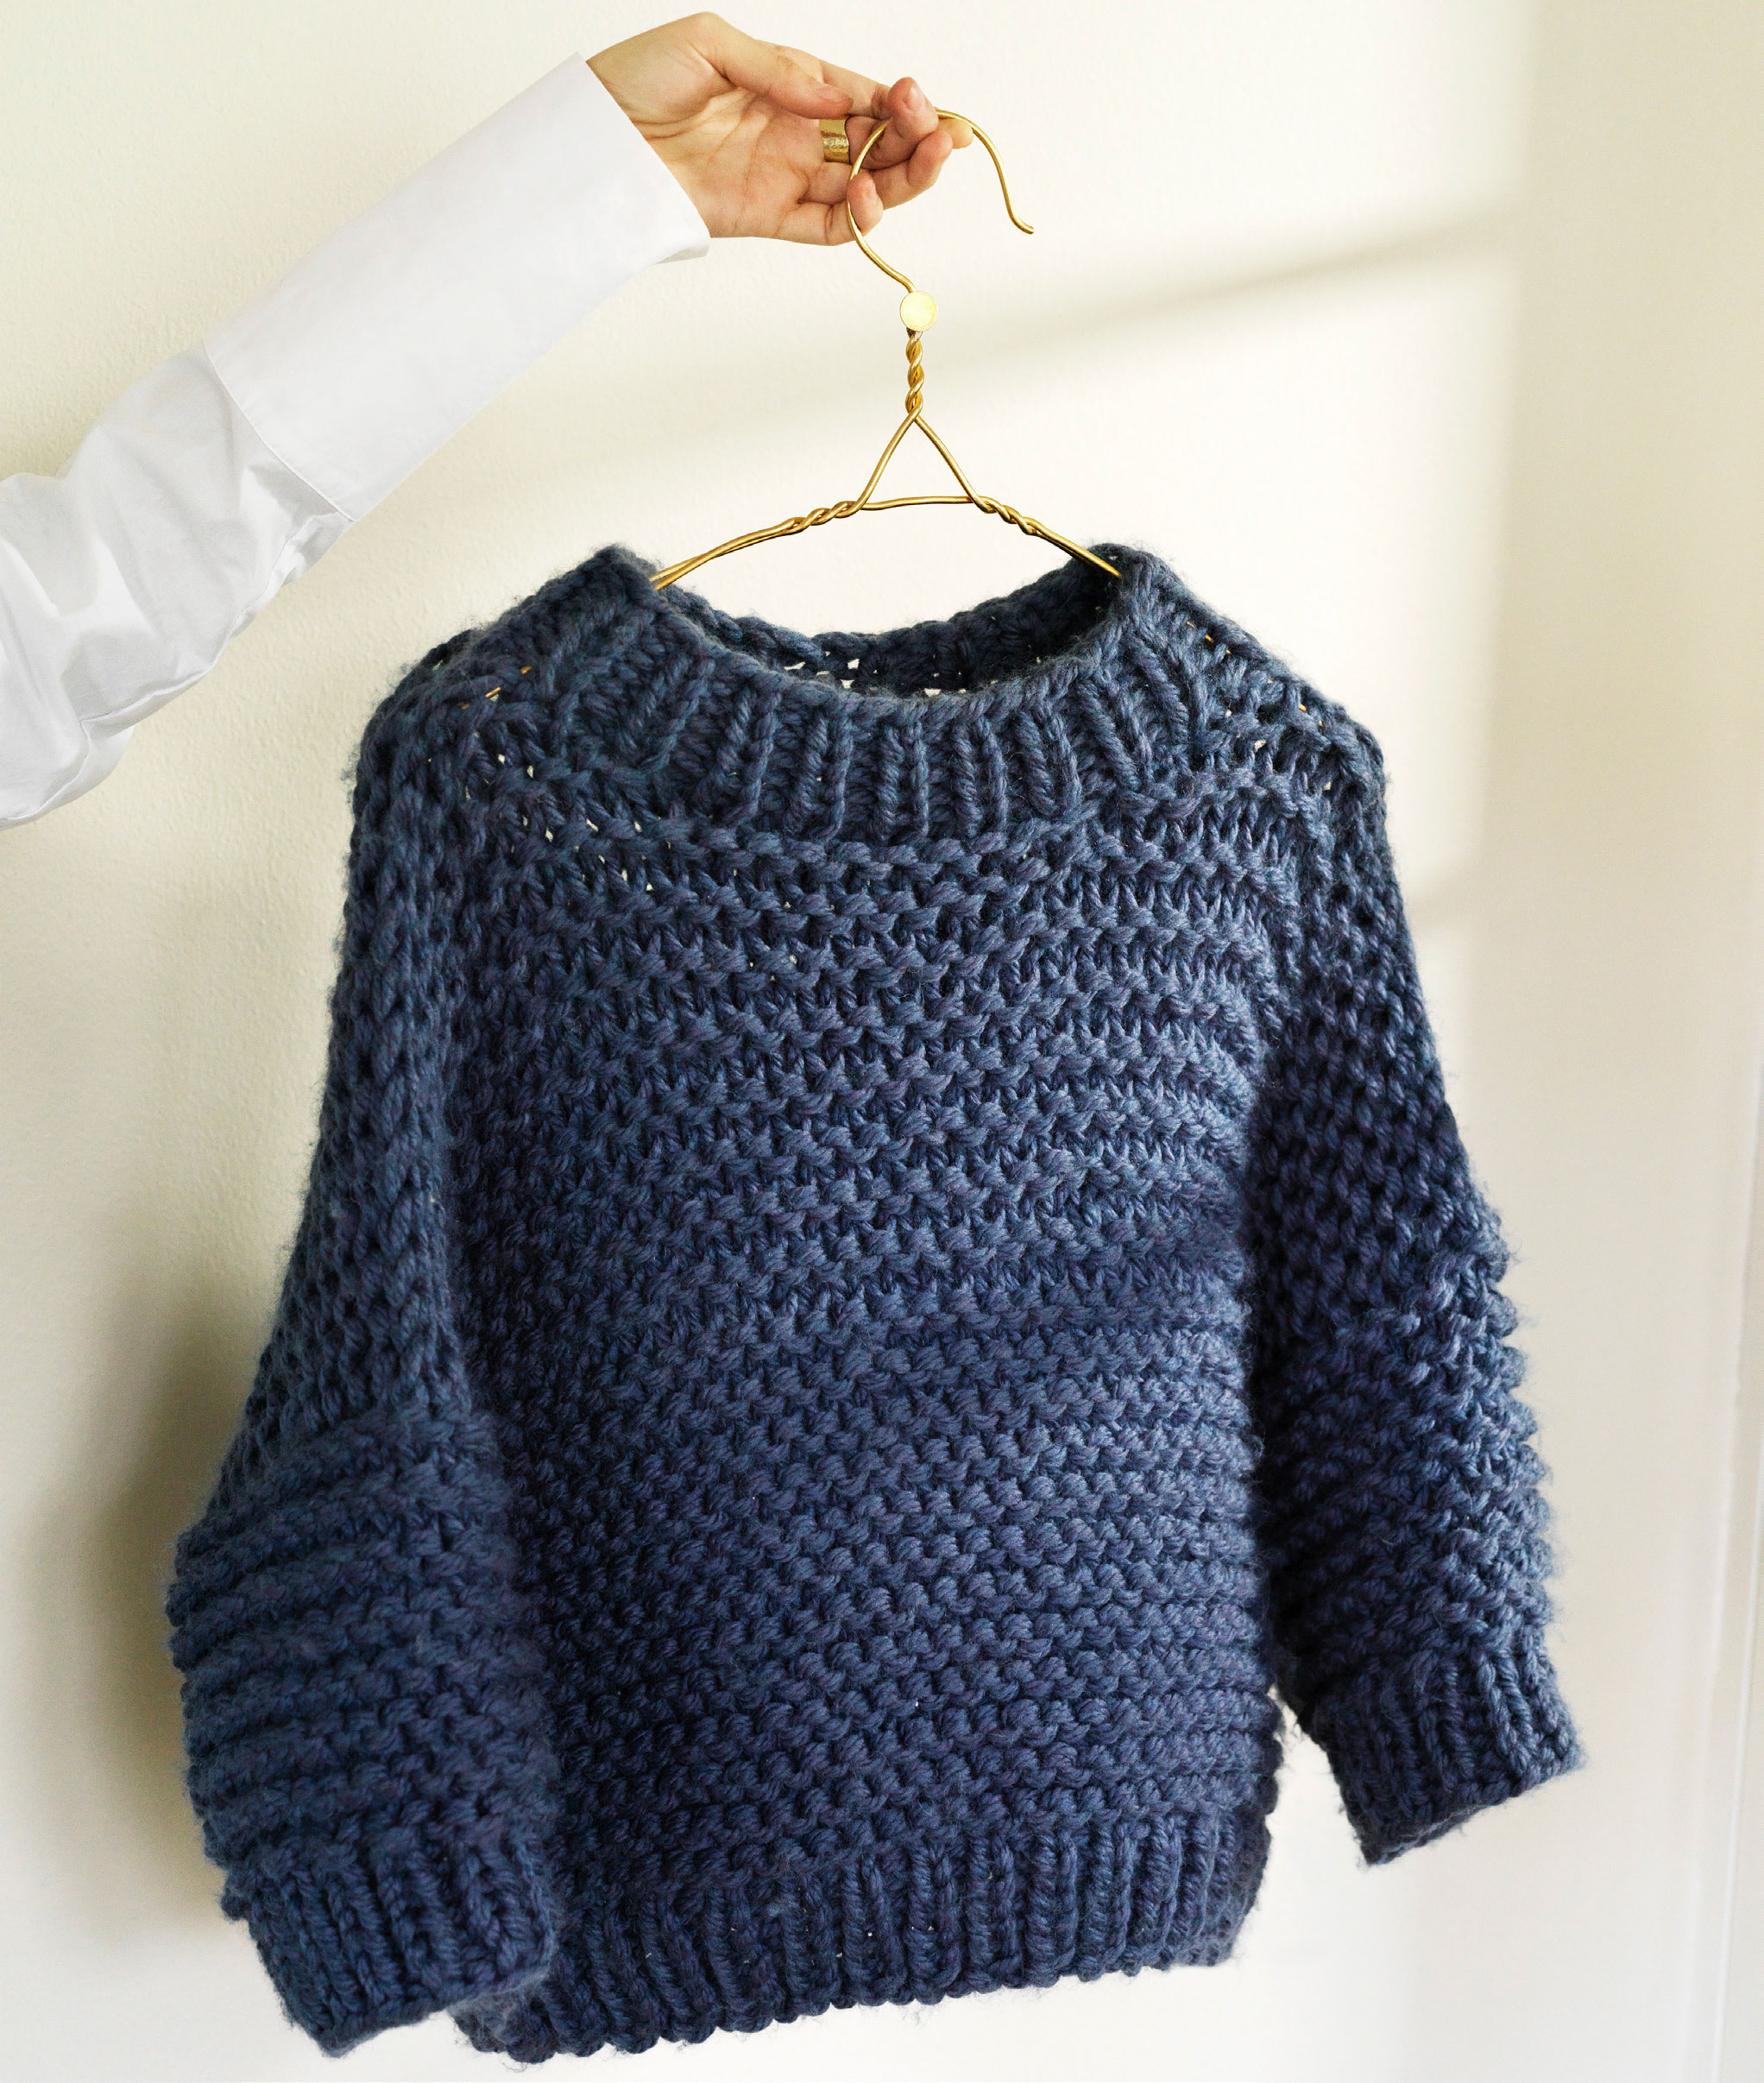 Indkøbscenter folder Slutning Strik denne chunky sweater på 2 dage - se opskriften her - ALT.dk